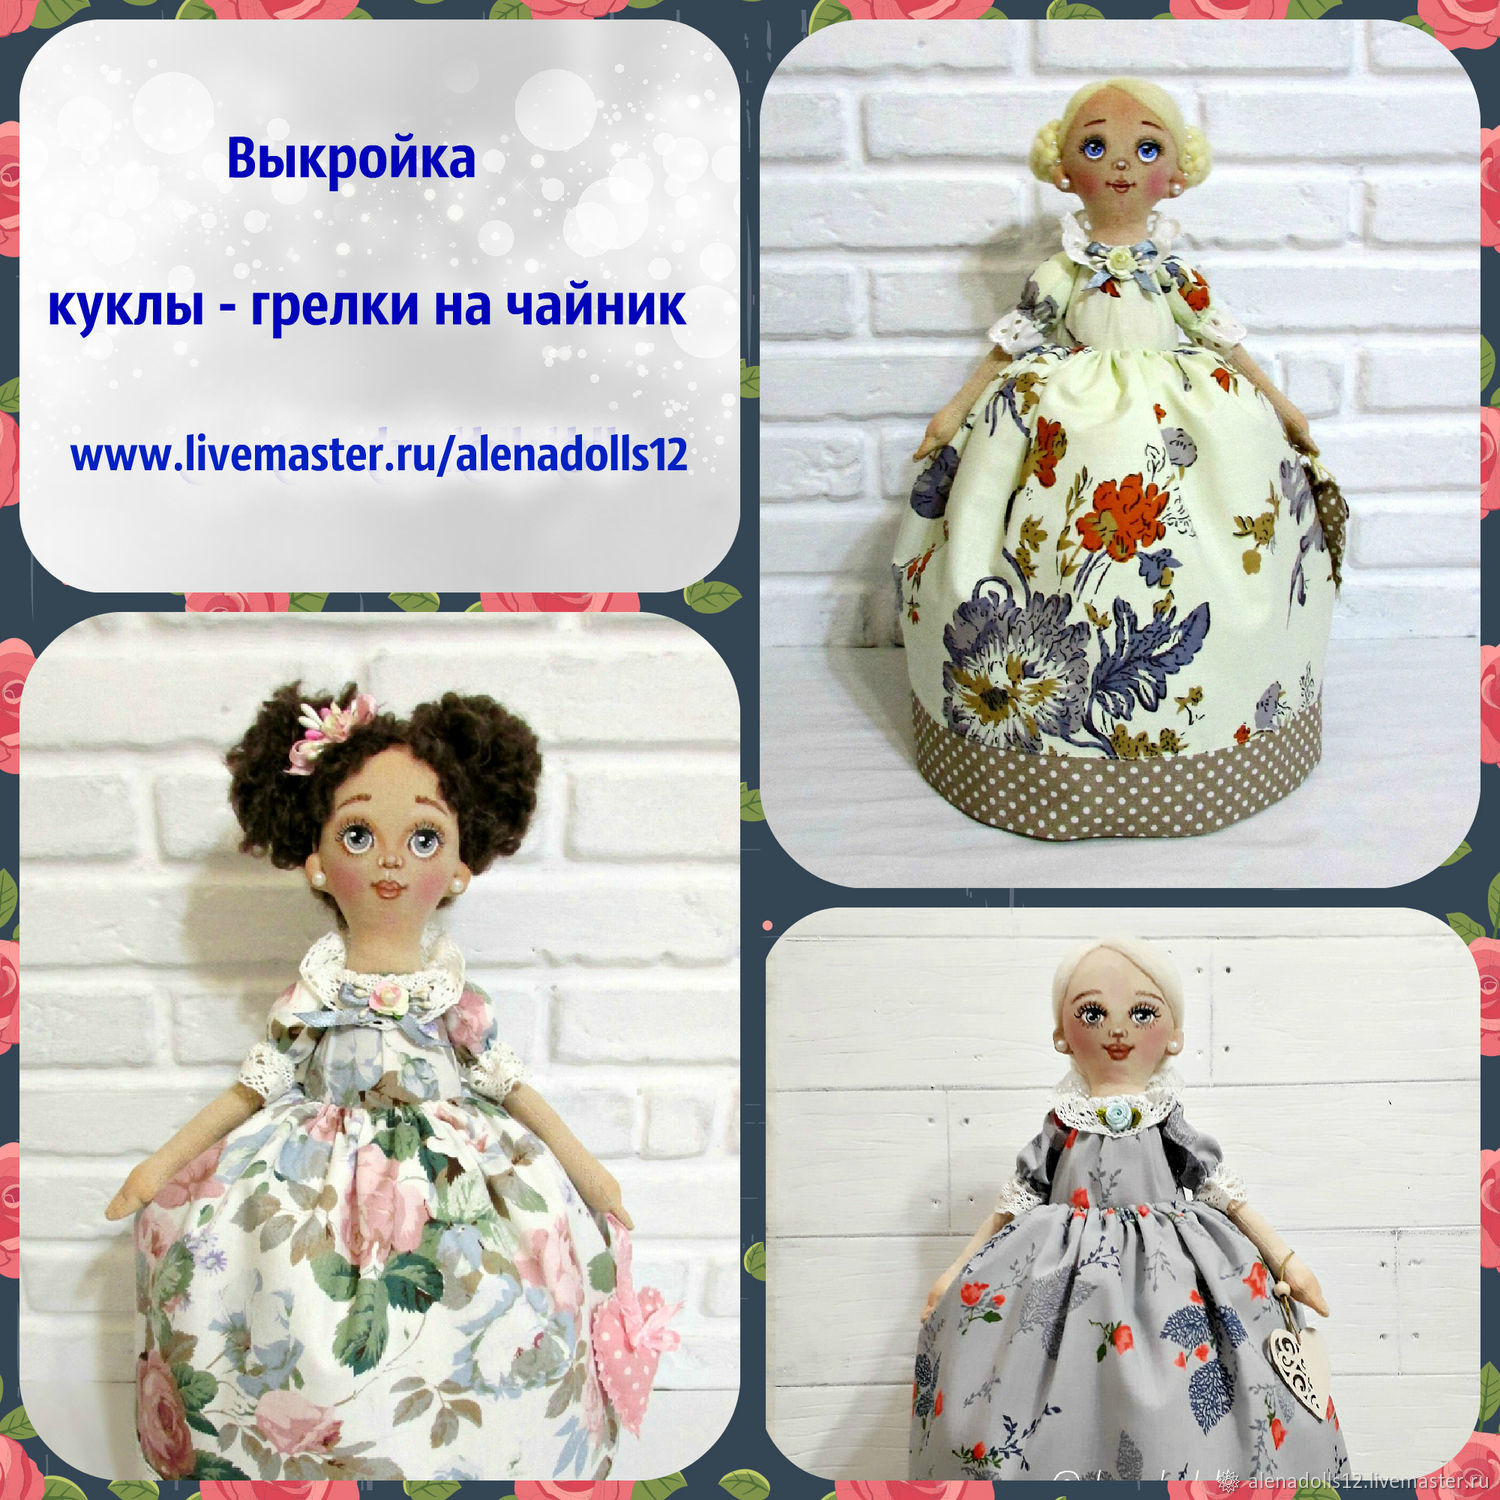 Очаровательные куклы-грелки на чайник для уюта вашего дома | okuhnevse.ru